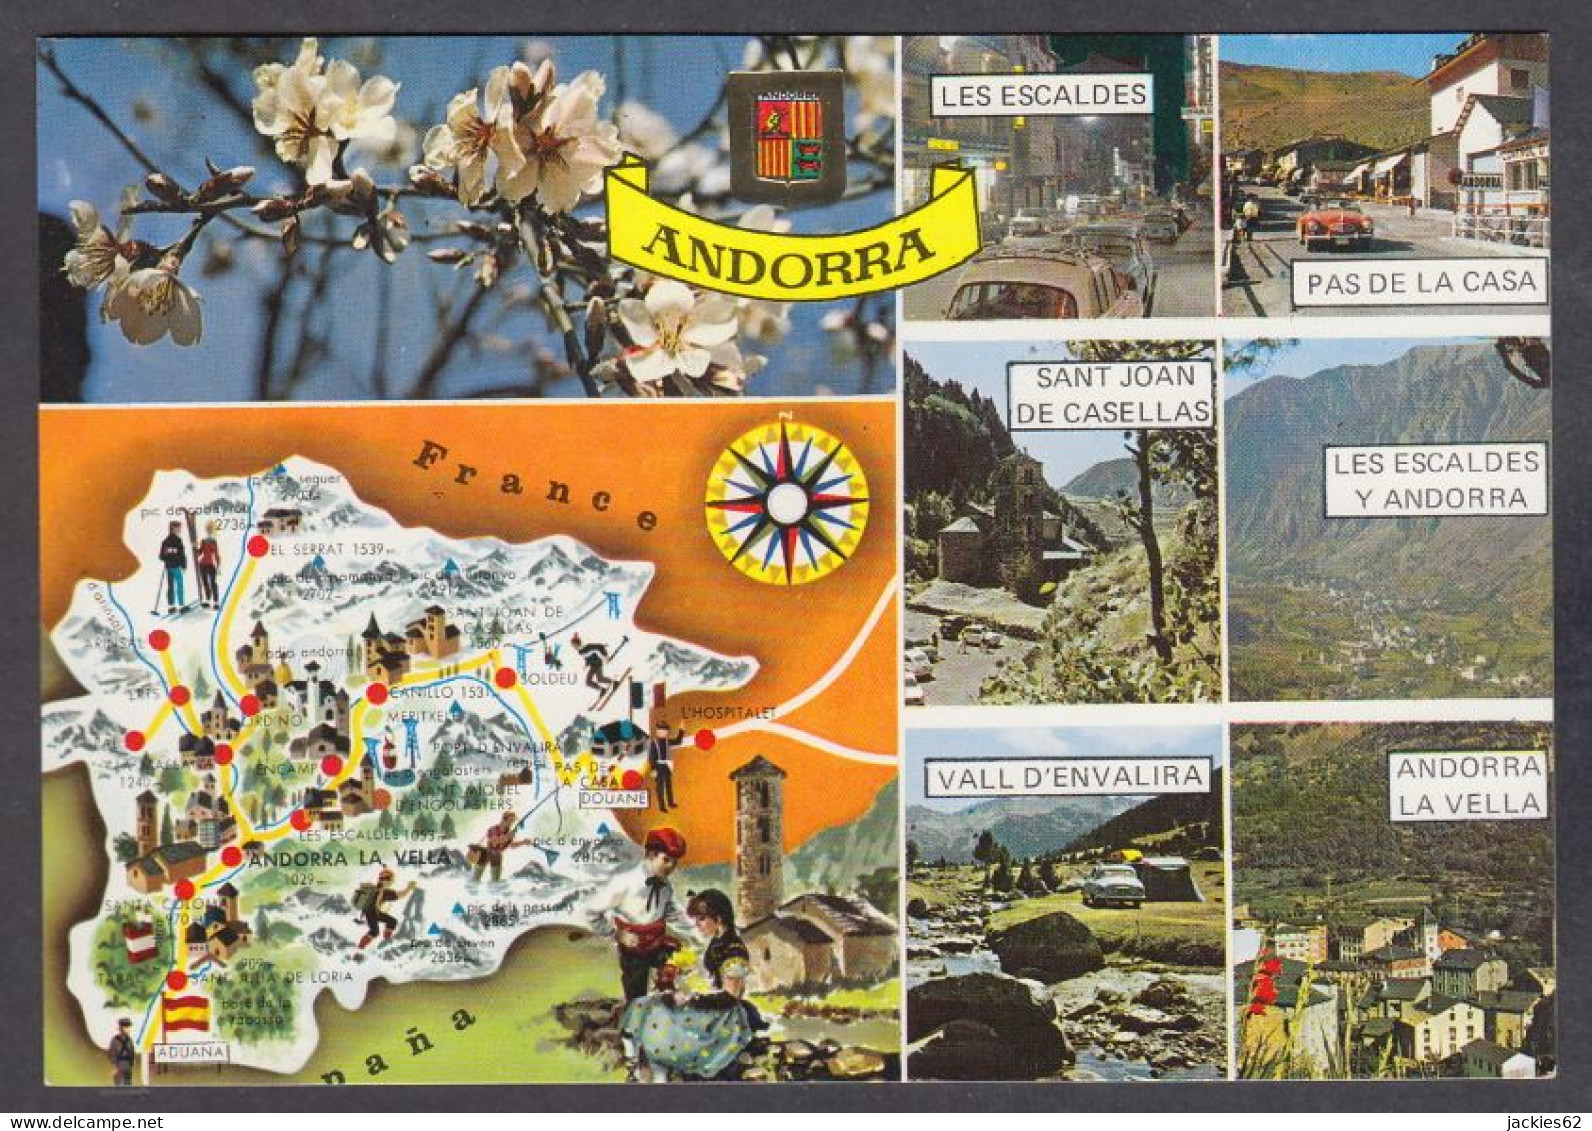 126901/ Valls D'Andorra, Mapa Geogràfic  - Andorra